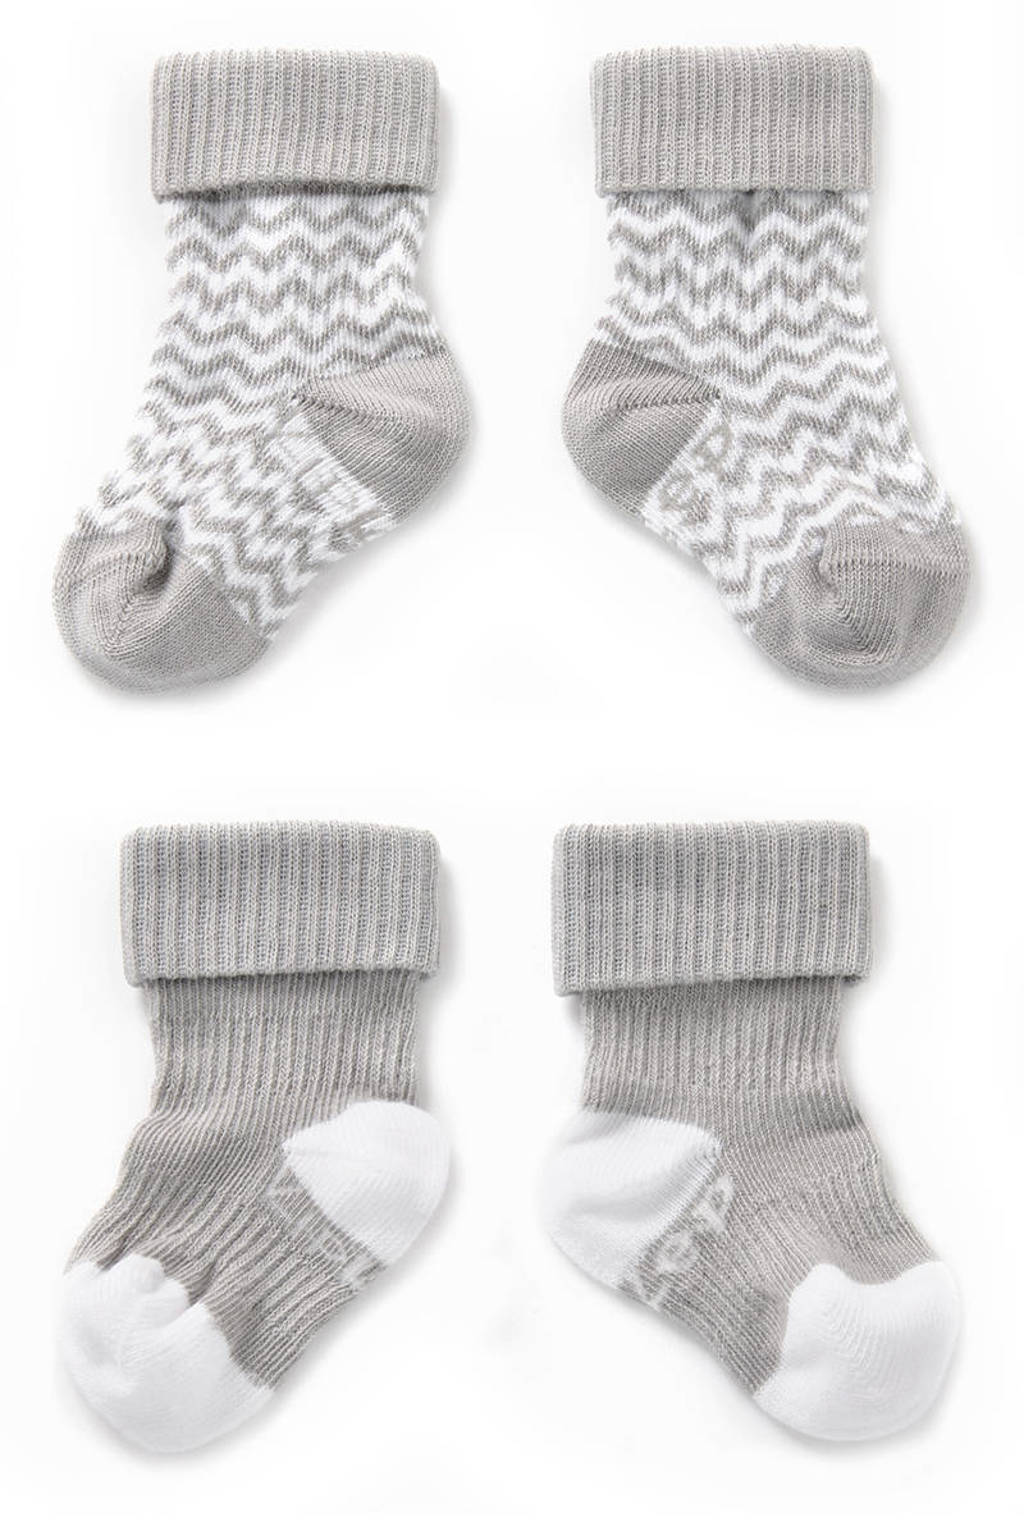 KipKep blijf-sokken 0-12 maanden - set van 2 grijs/wit, Grijs/wit